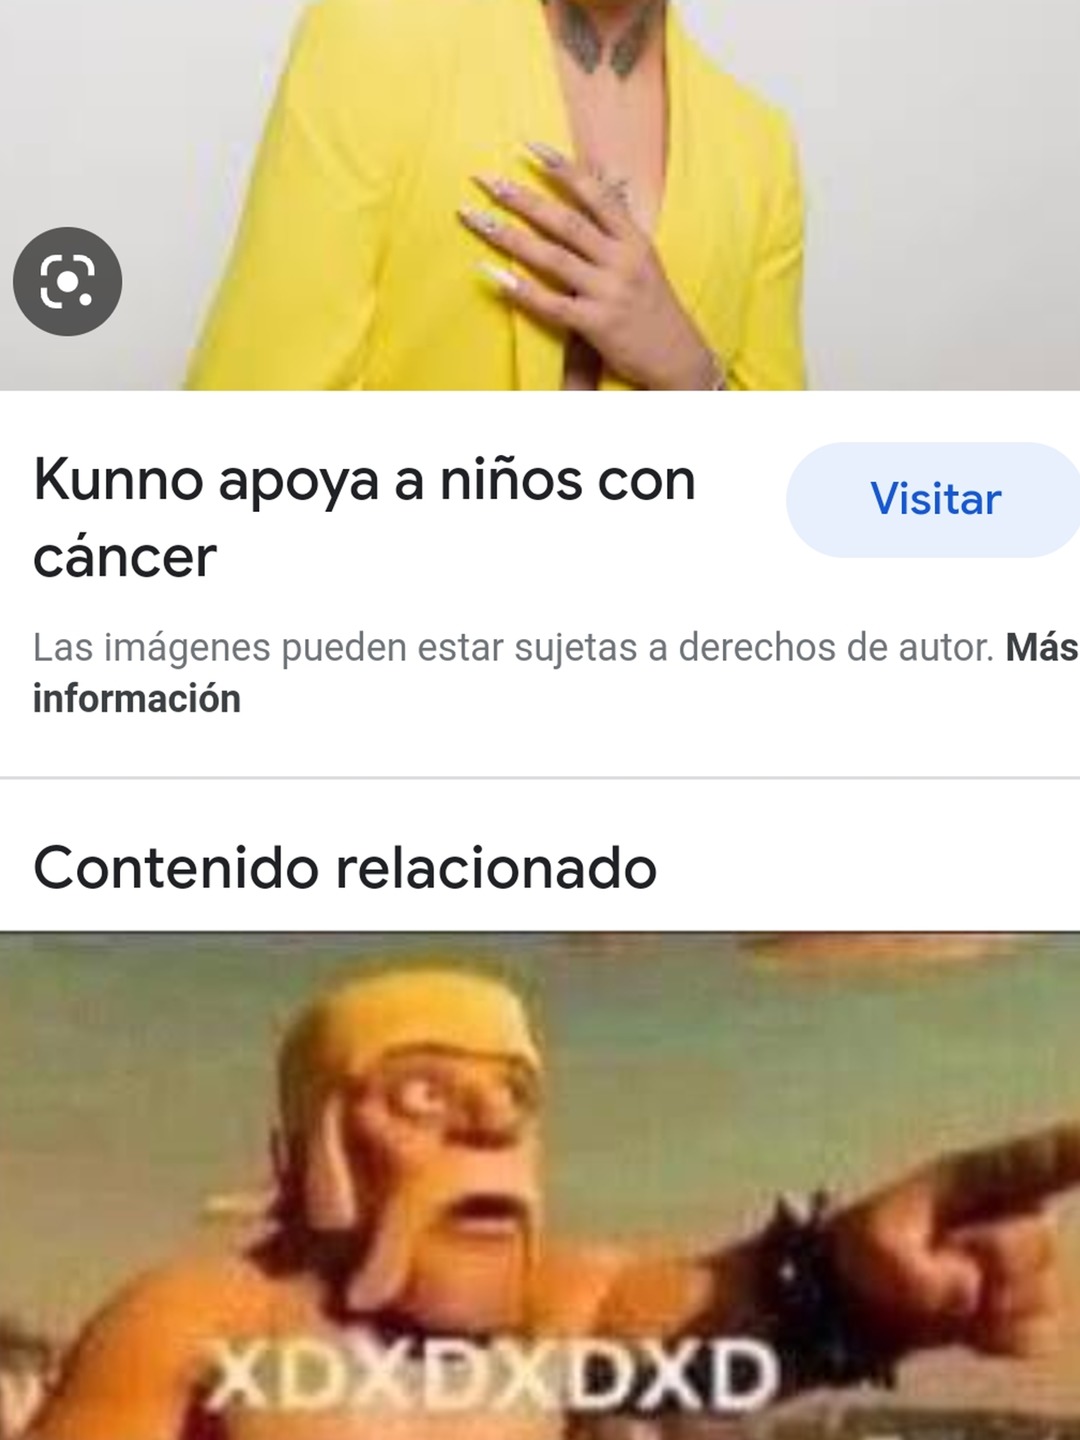 Kunno da cáncer - meme